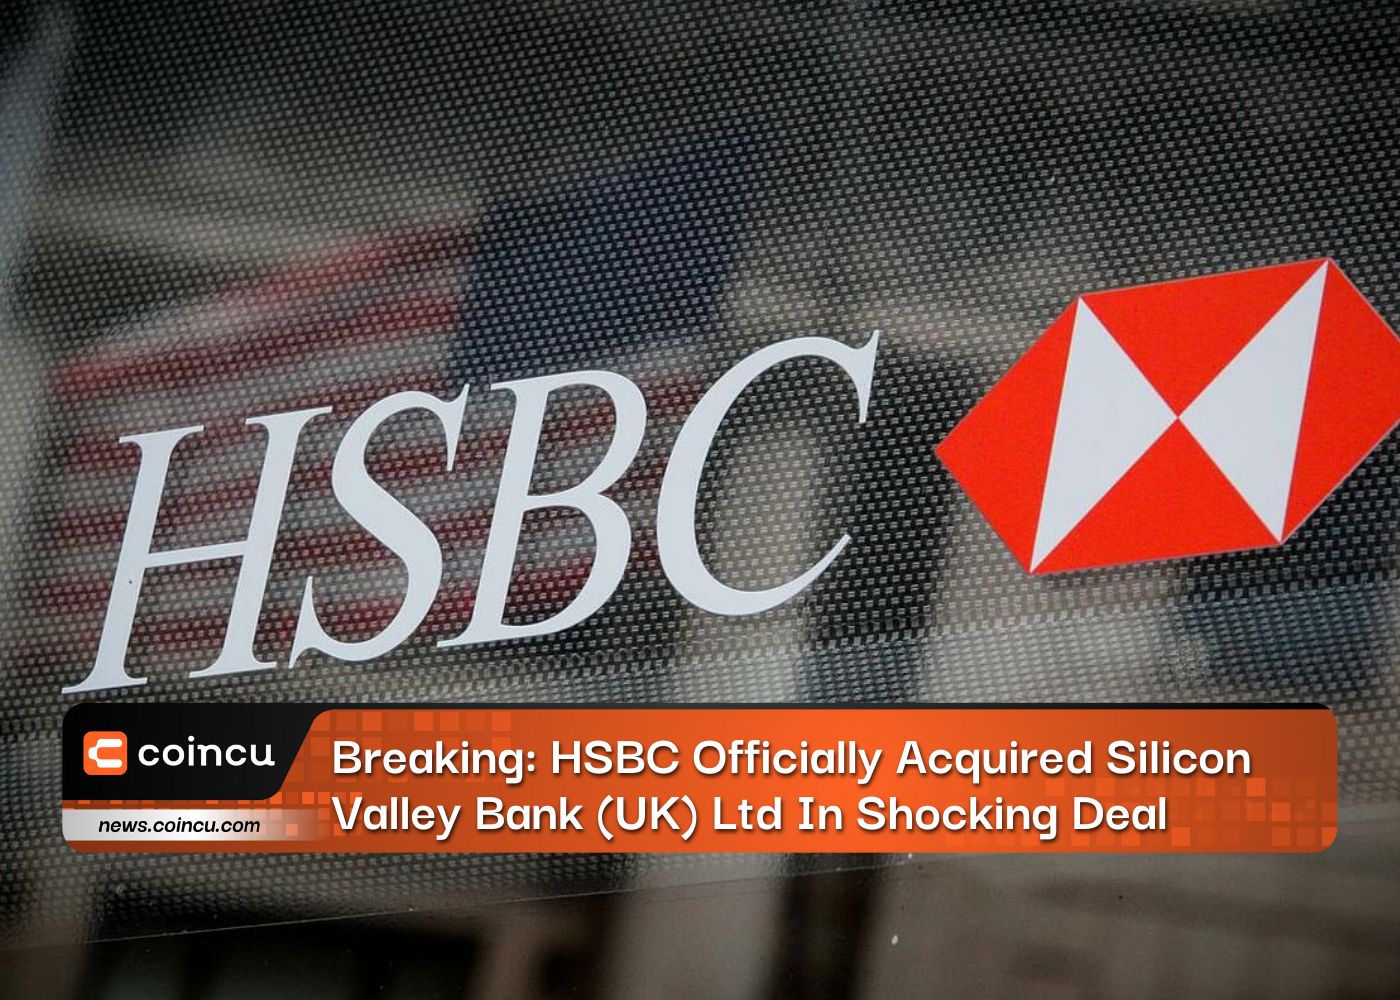 속보: HSBC, 공식적으로 Silicon Valley Bank (UK) Ltd를 충격적인 거래로 인수